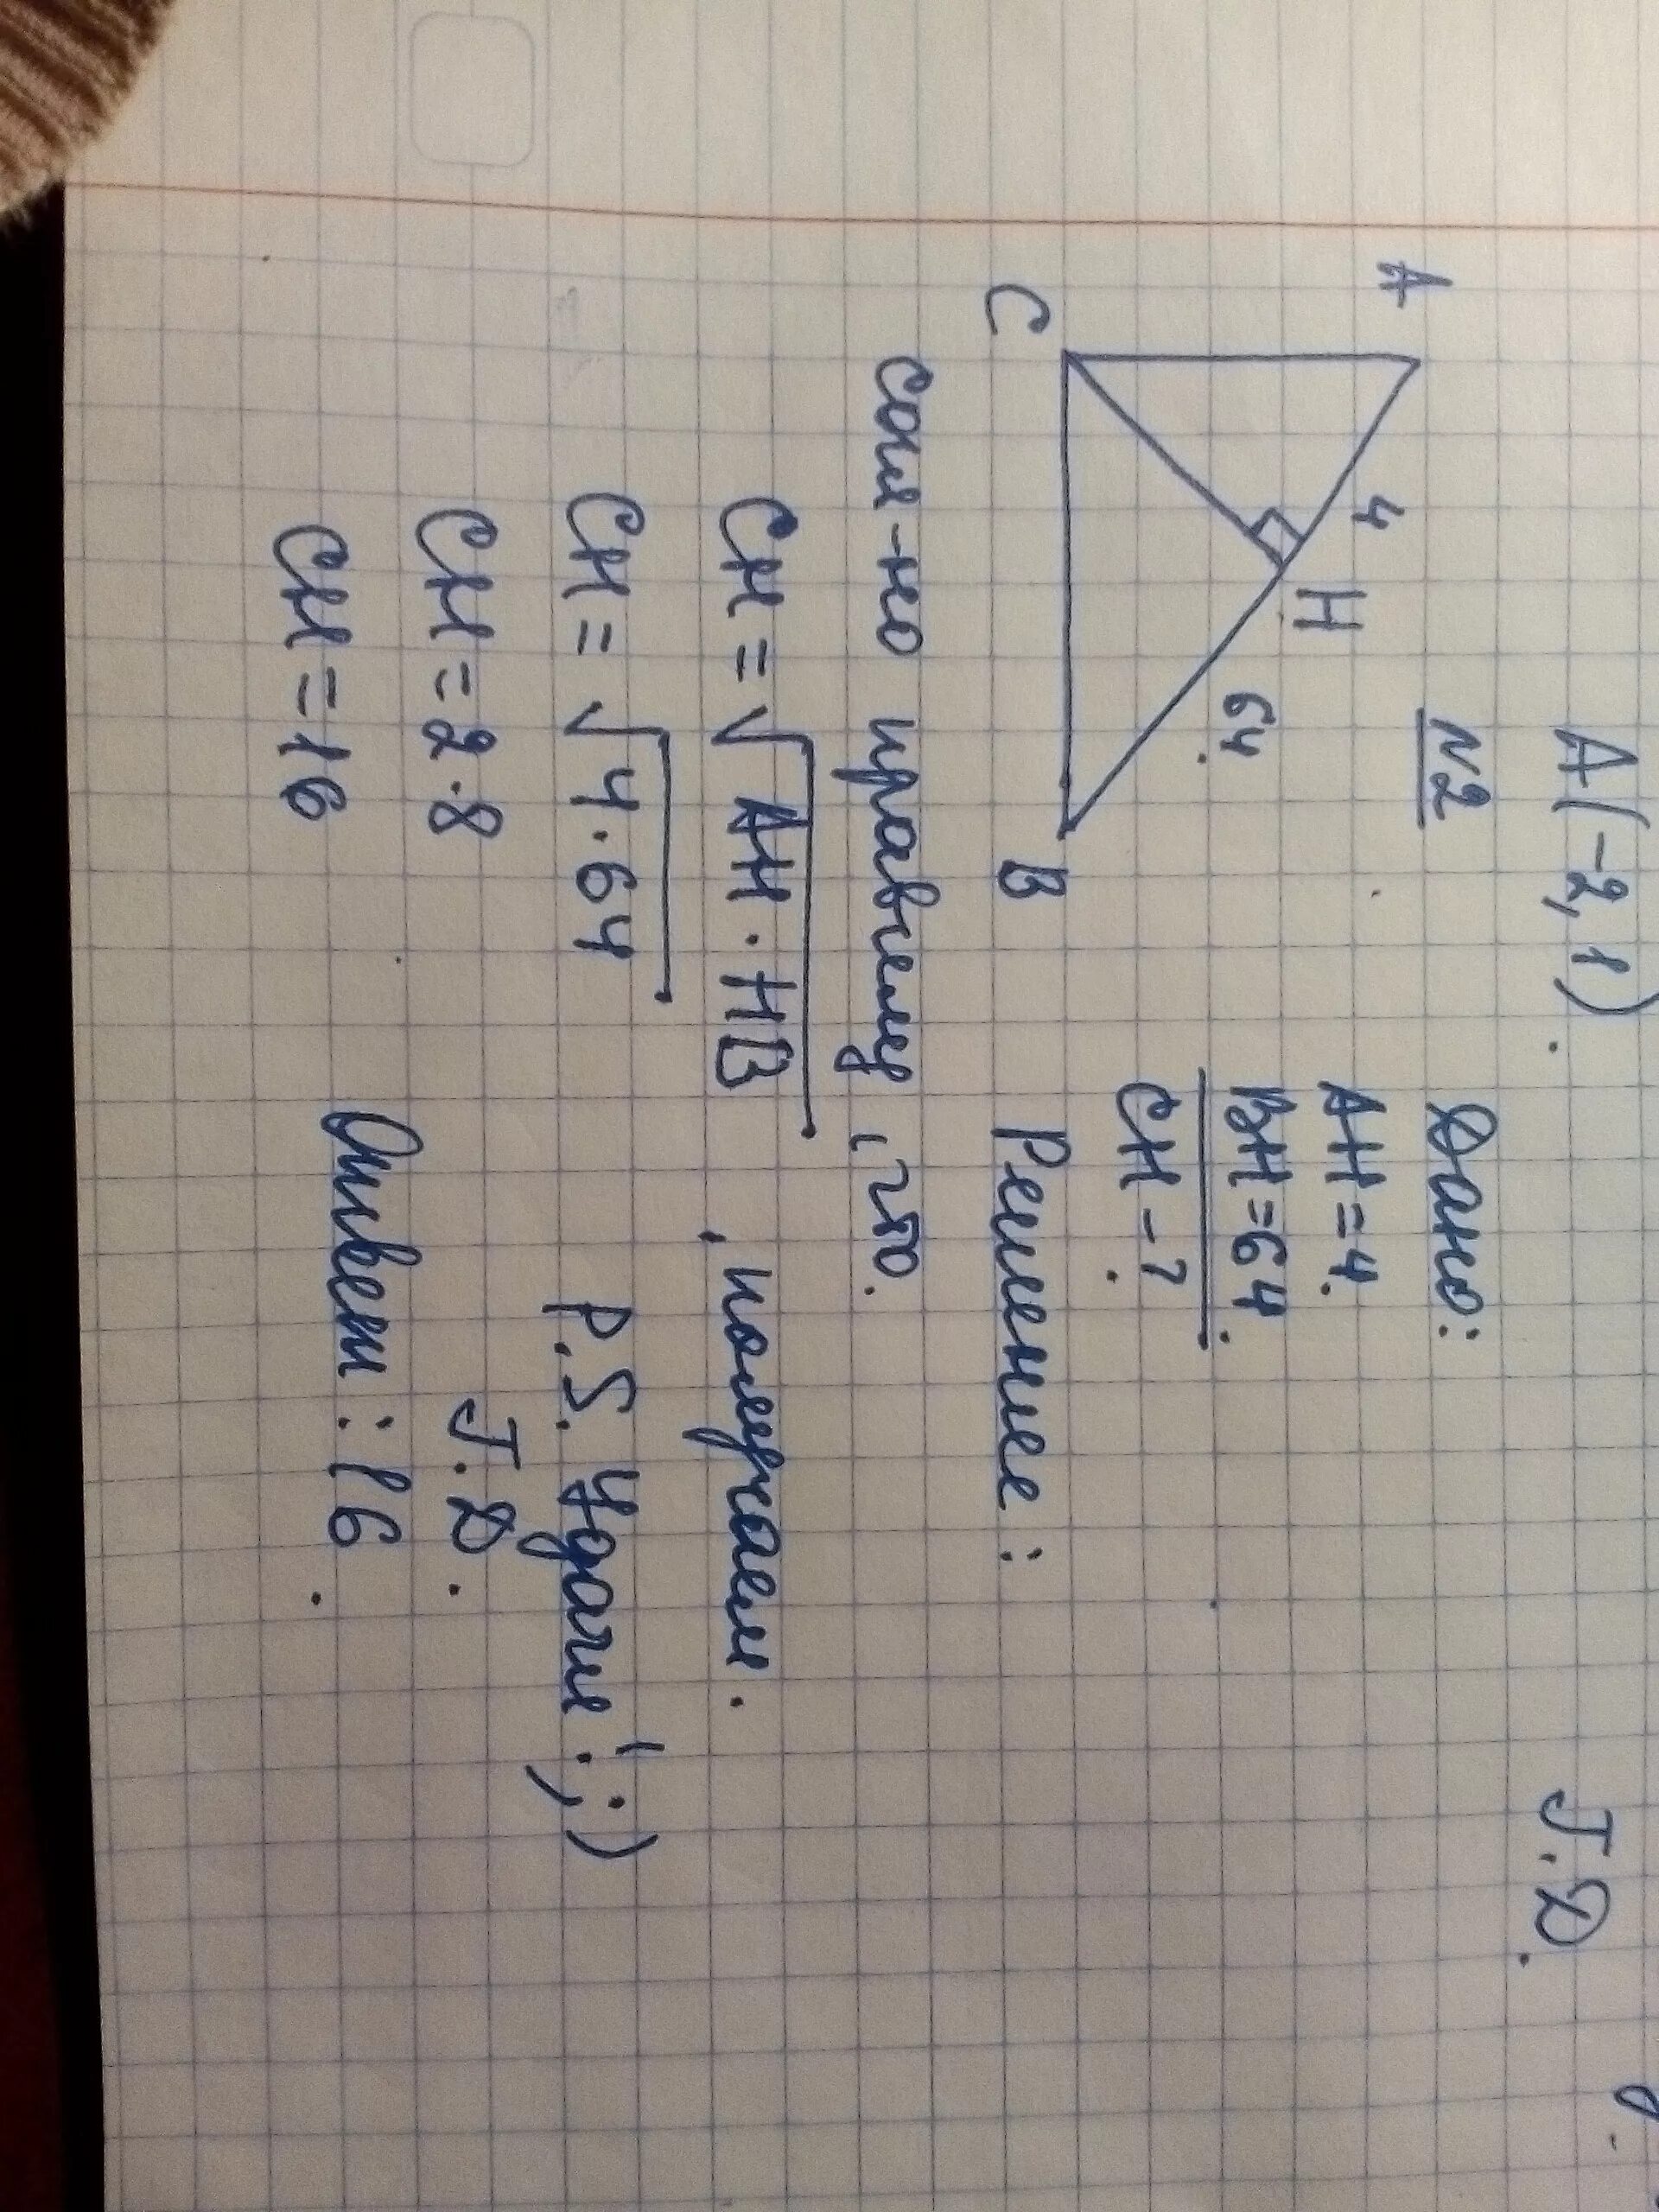 Прямоугольный треугольник с гипотенузой ab. В прямоугольном треугольнике ABC гипотенуза ab. На гипотенузу прямоугольного треугольника опущена высота СН. На гипотенузу АВ прямоугольного треугольника АВС опущена высота.